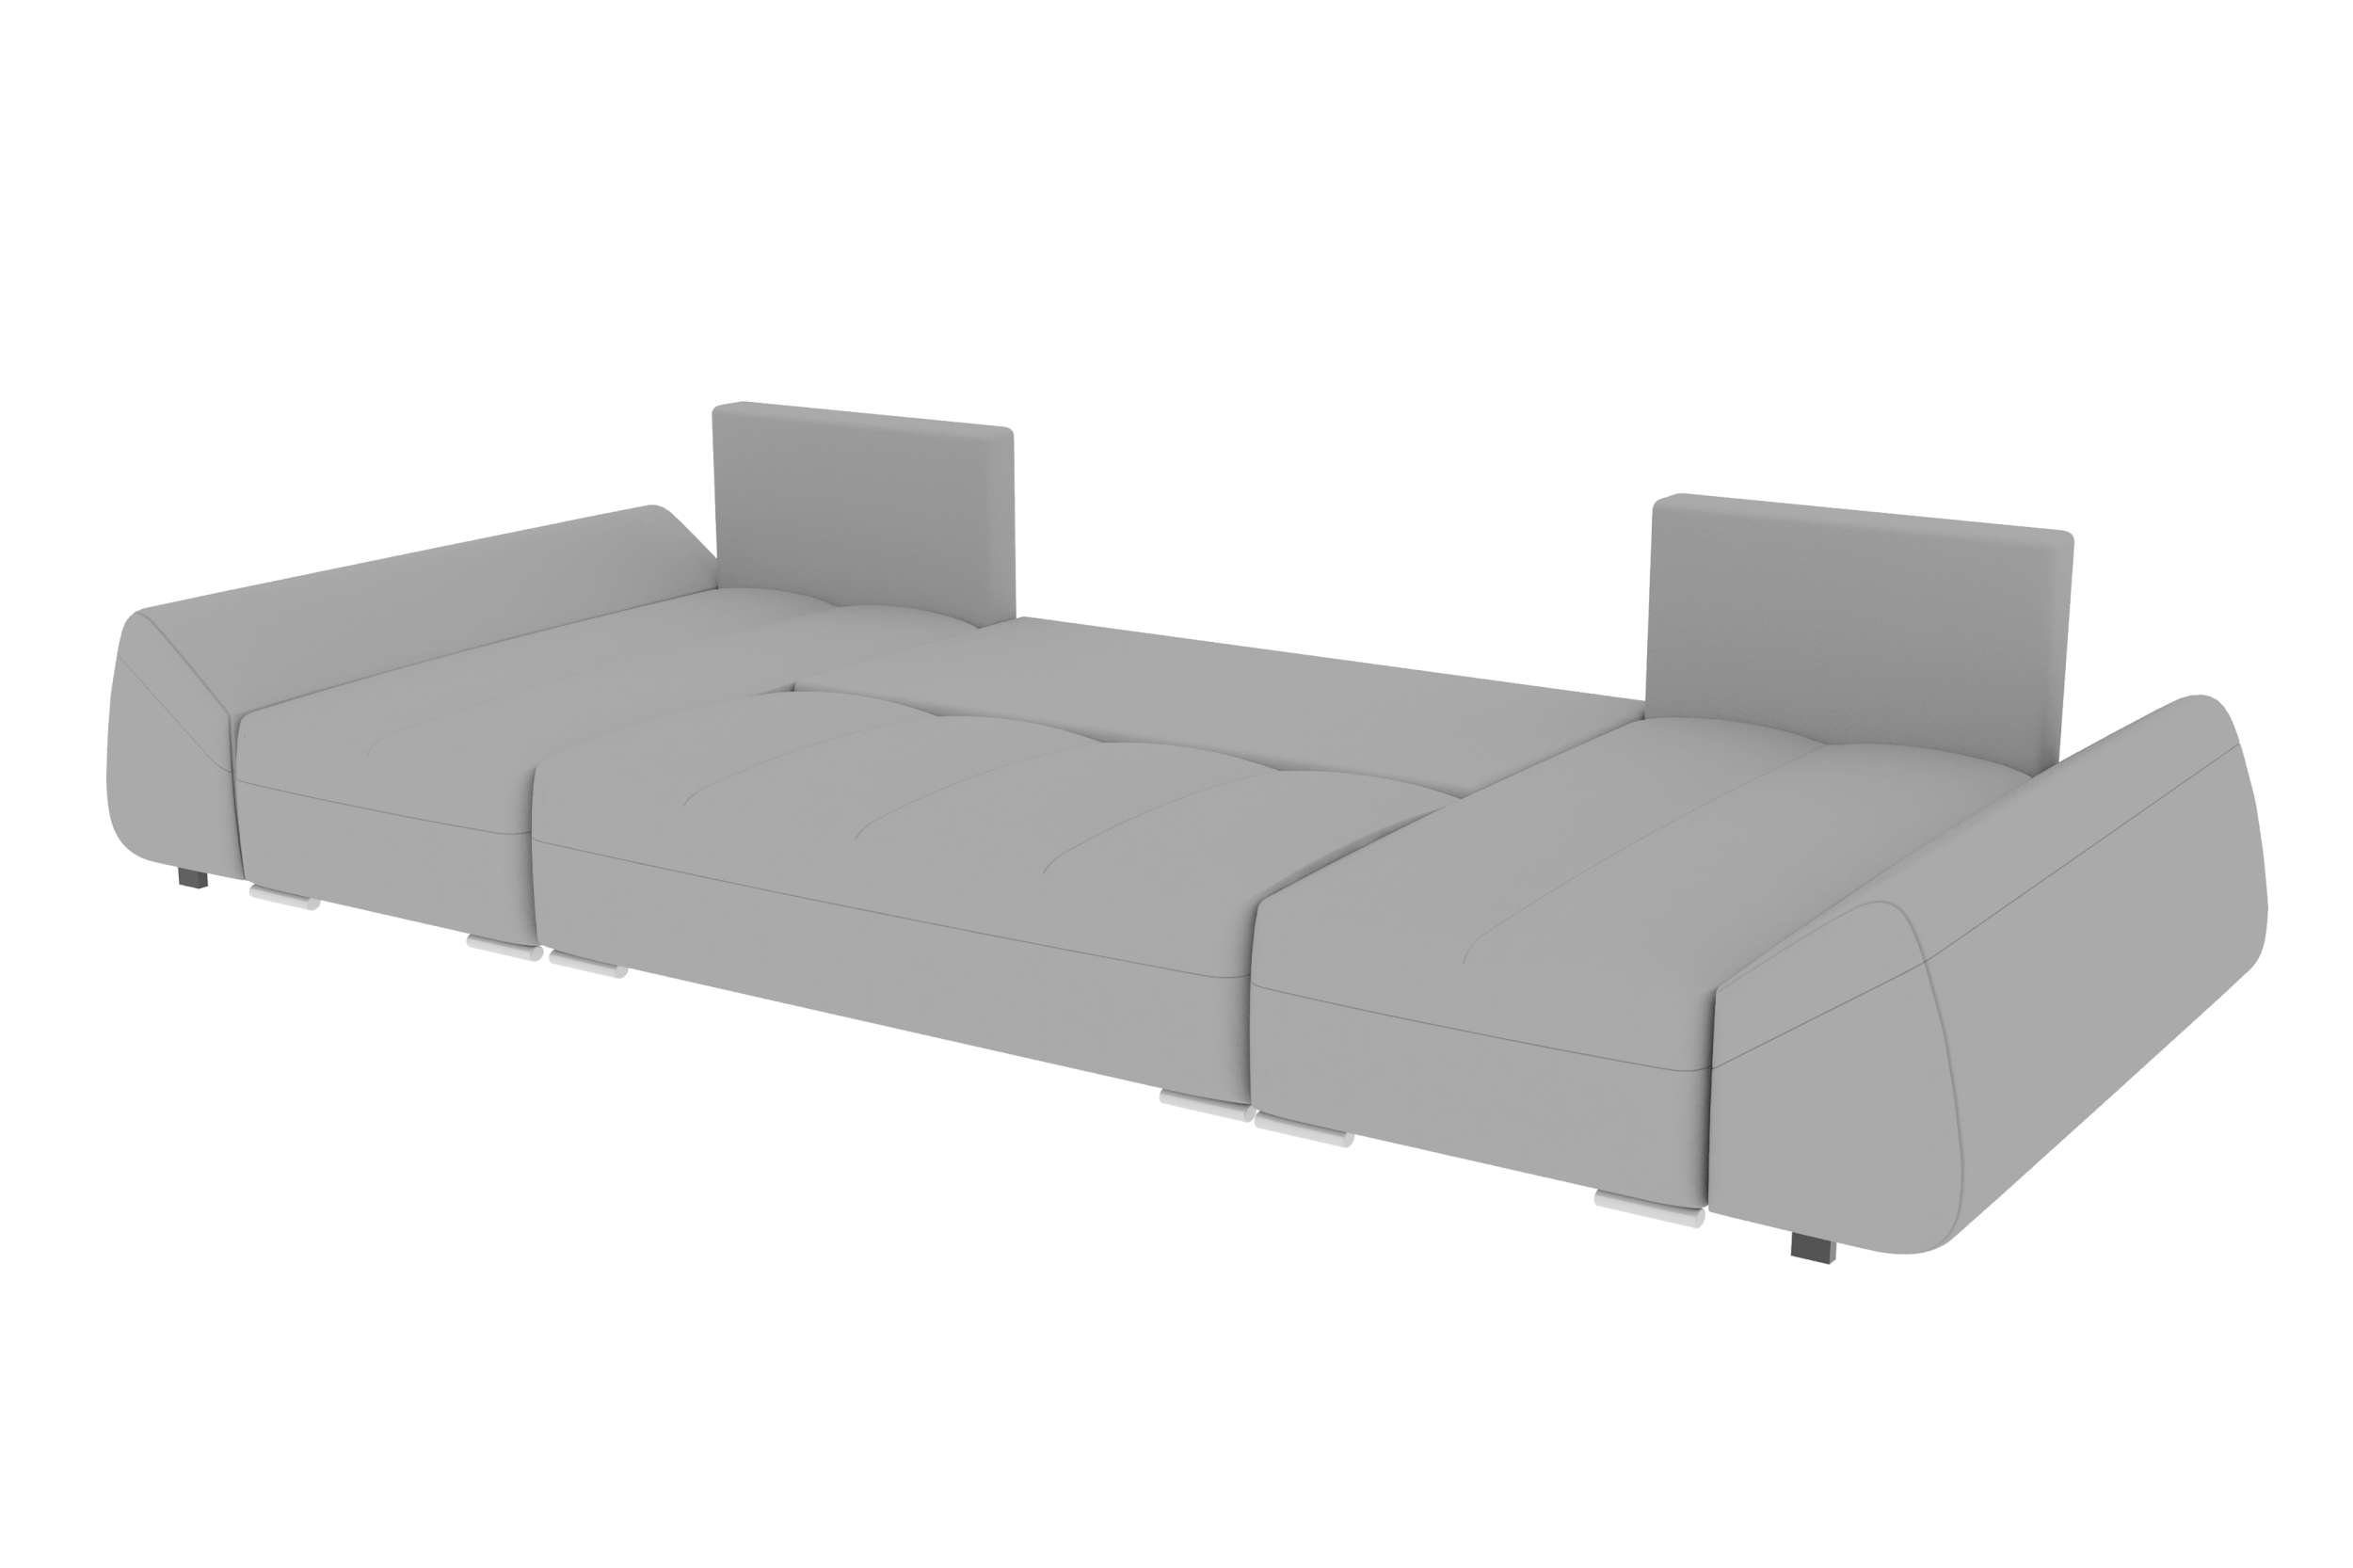 Stylefy Wohnlandschaft Madeira, U-Form, Design Sitzkomfort, mit mit Sofa, Eckcouch, Bettkasten, Bettfunktion, Modern